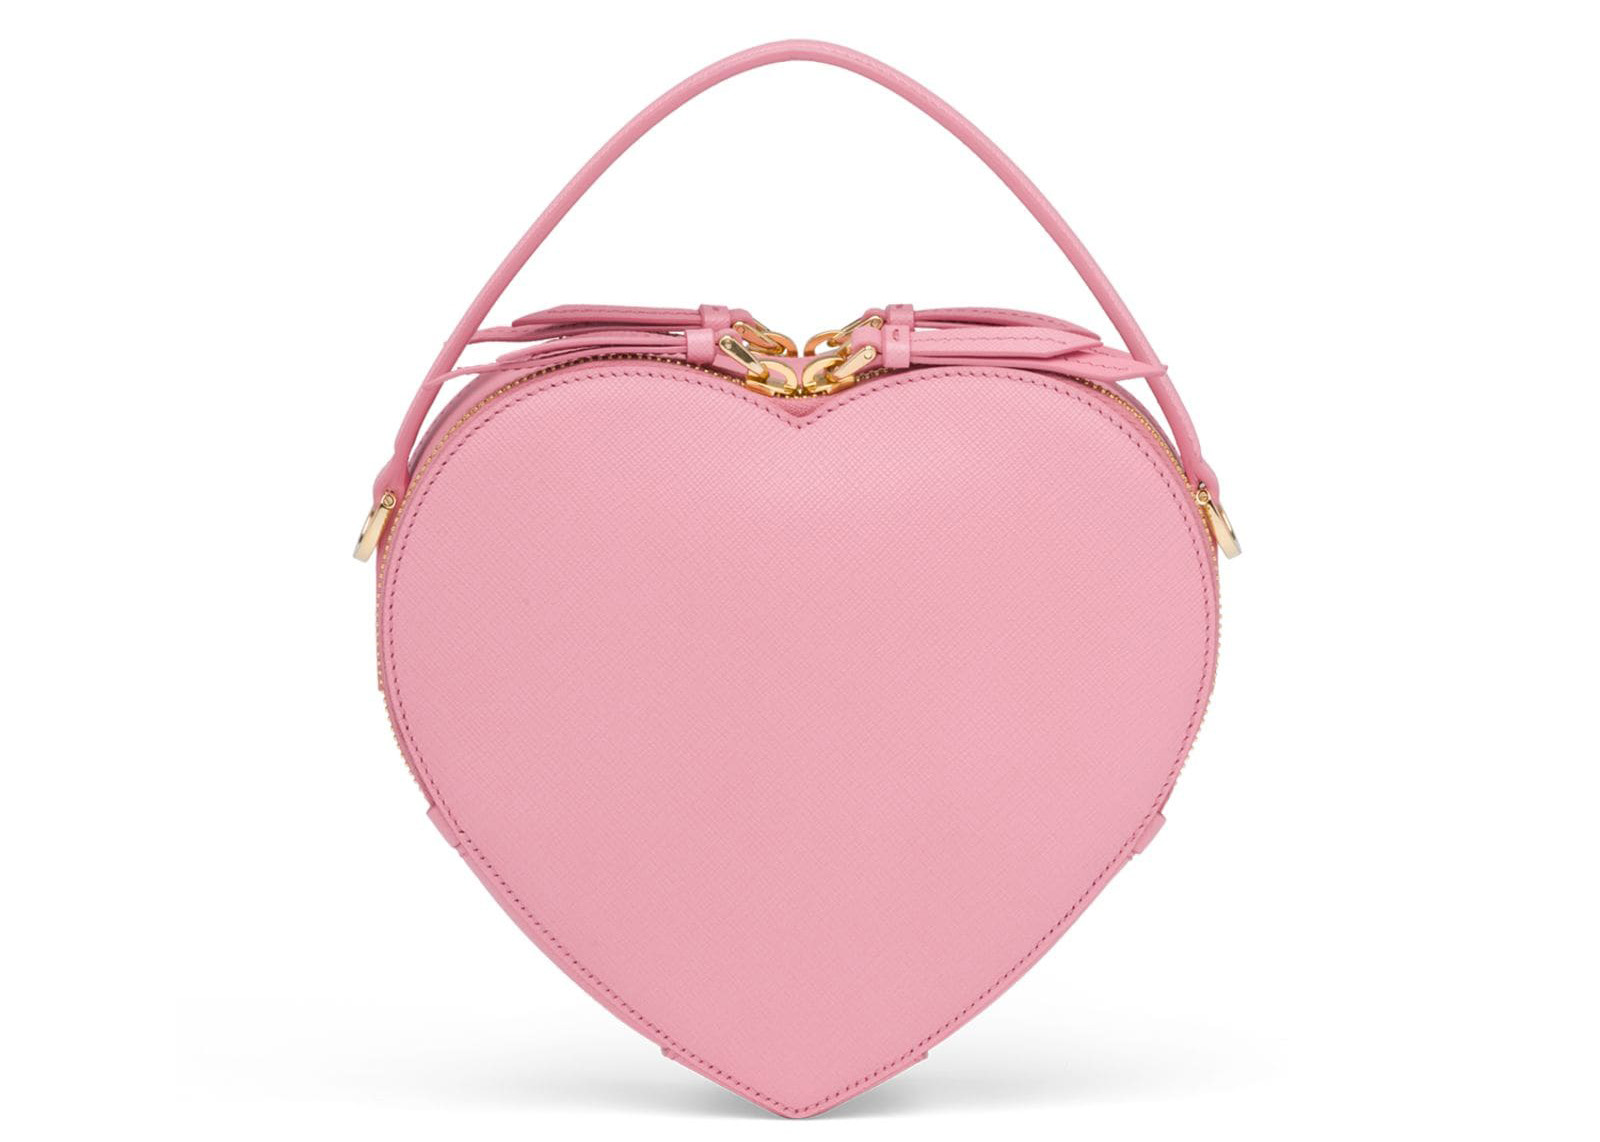 prada pink heart bag